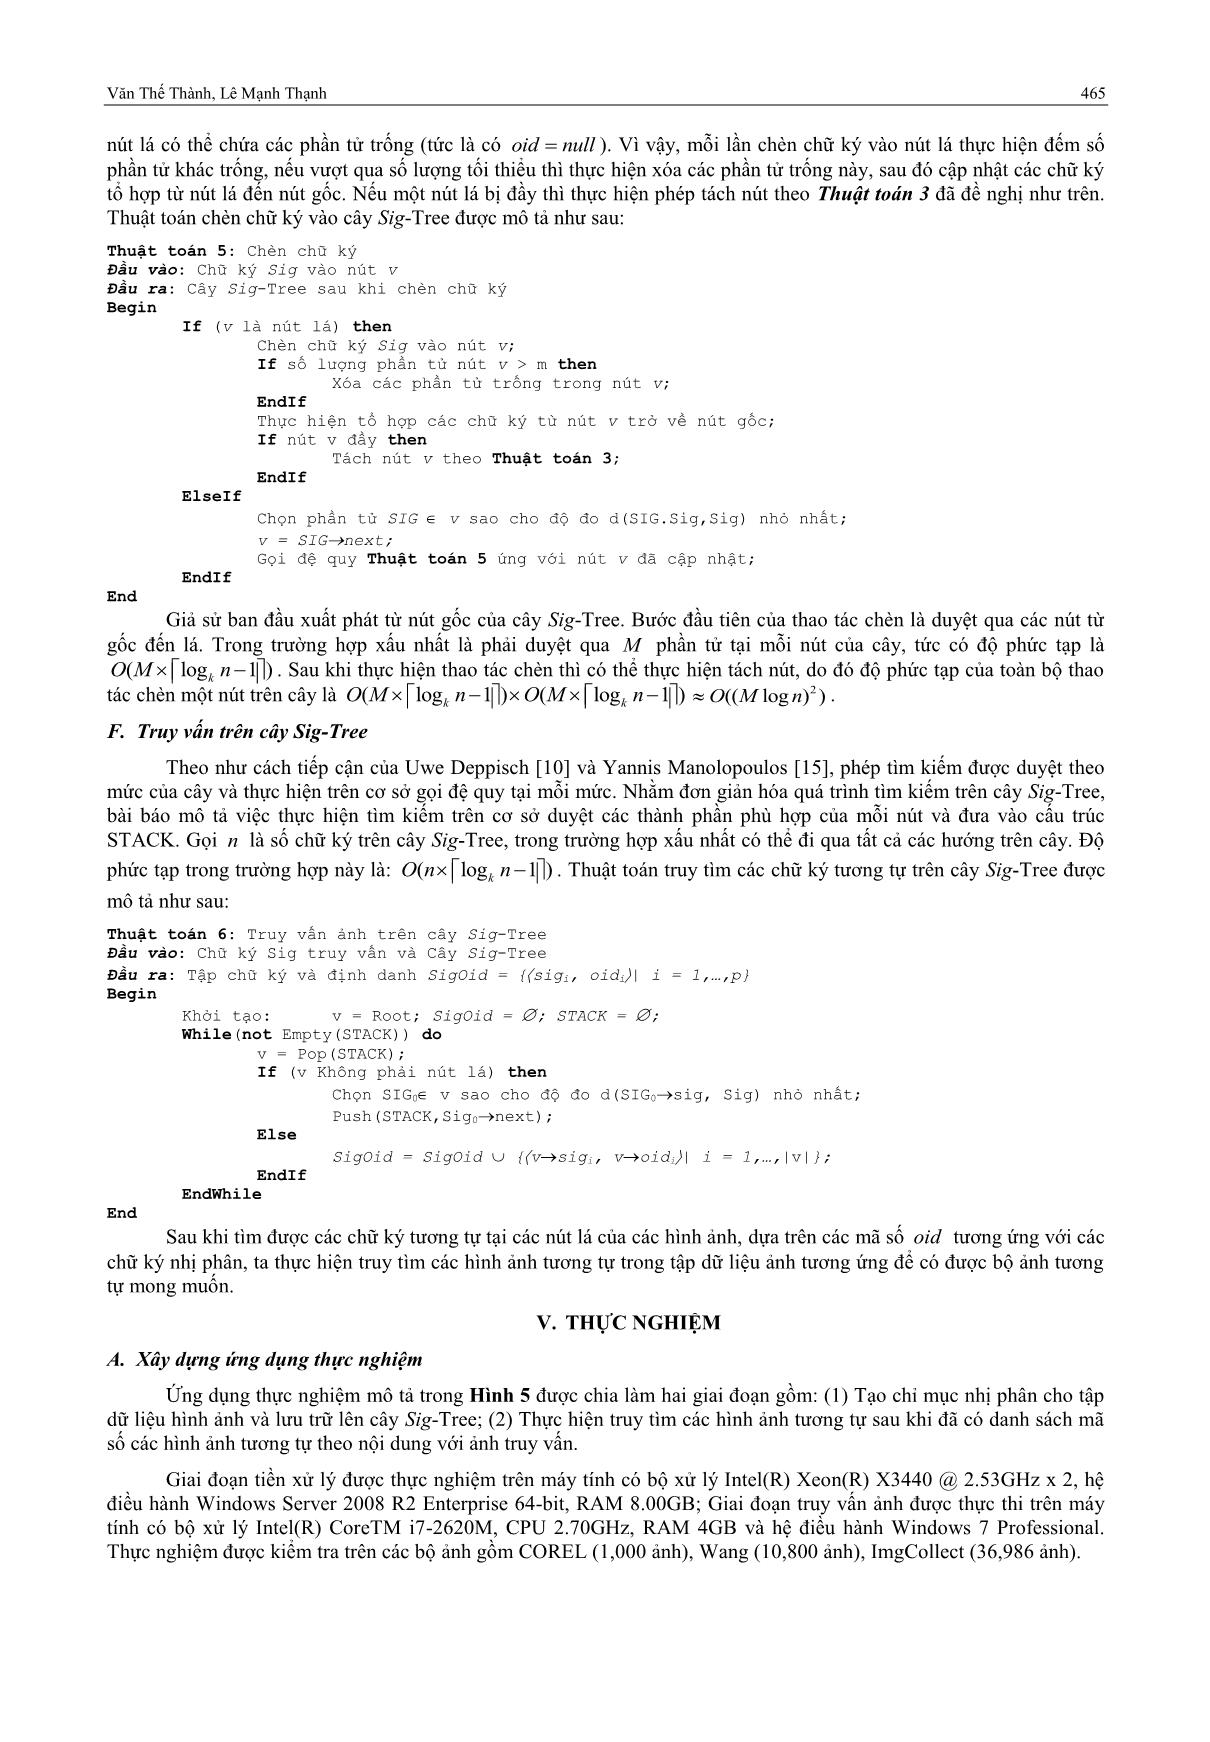 Một số cải tiến cho hệ truy vấn ảnh dựa trên cây S-tree trang 7